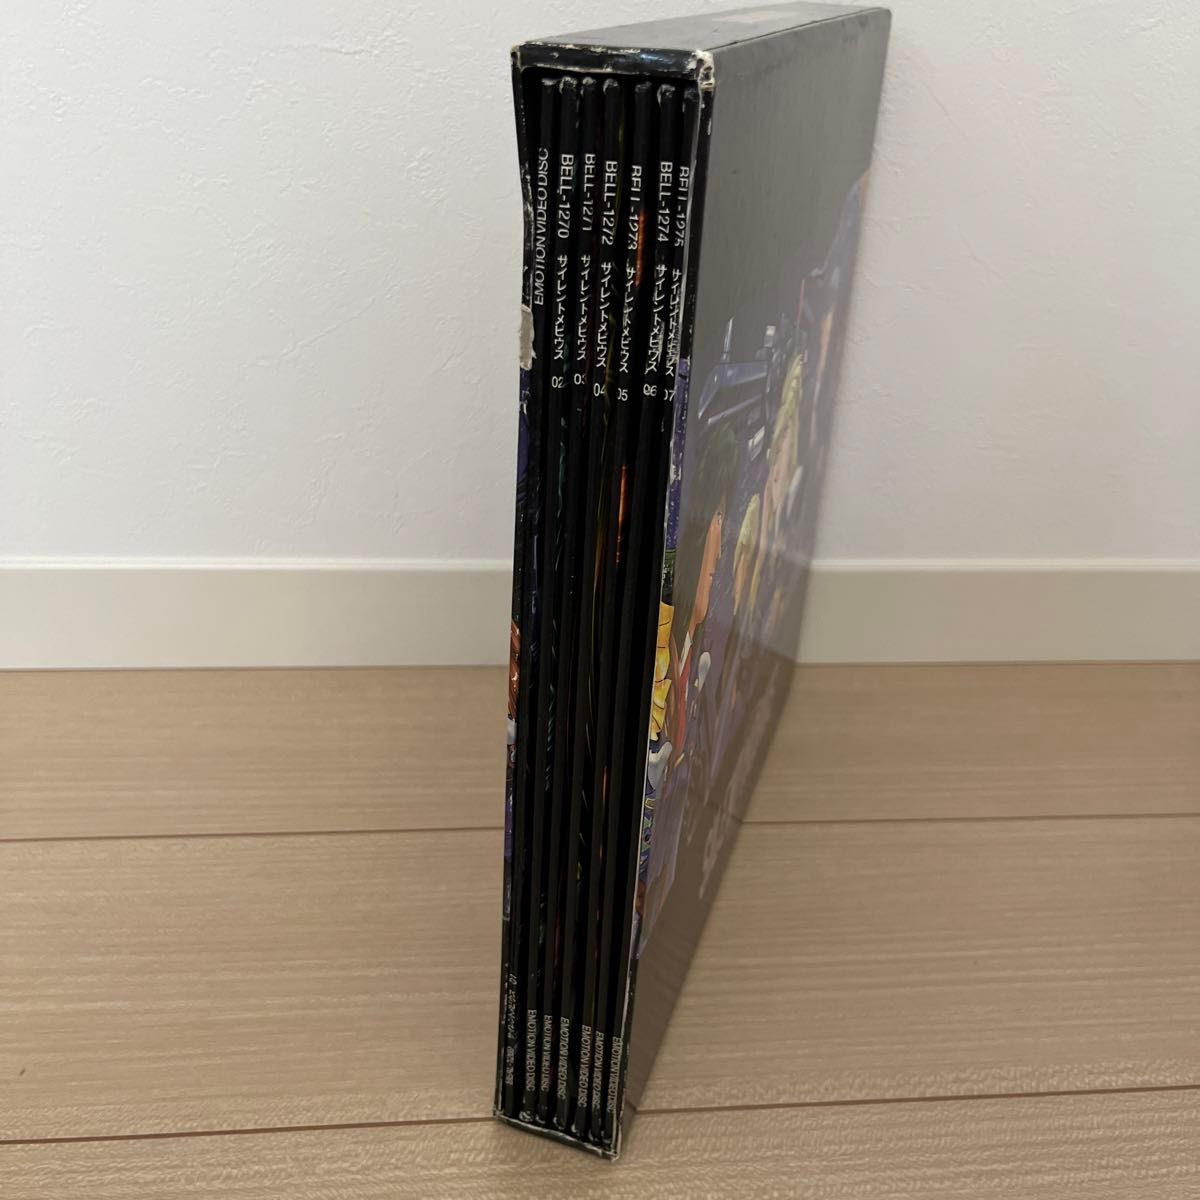 【超希少品】サイレントメビウス 7巻セット BOX付き レーザーディスク